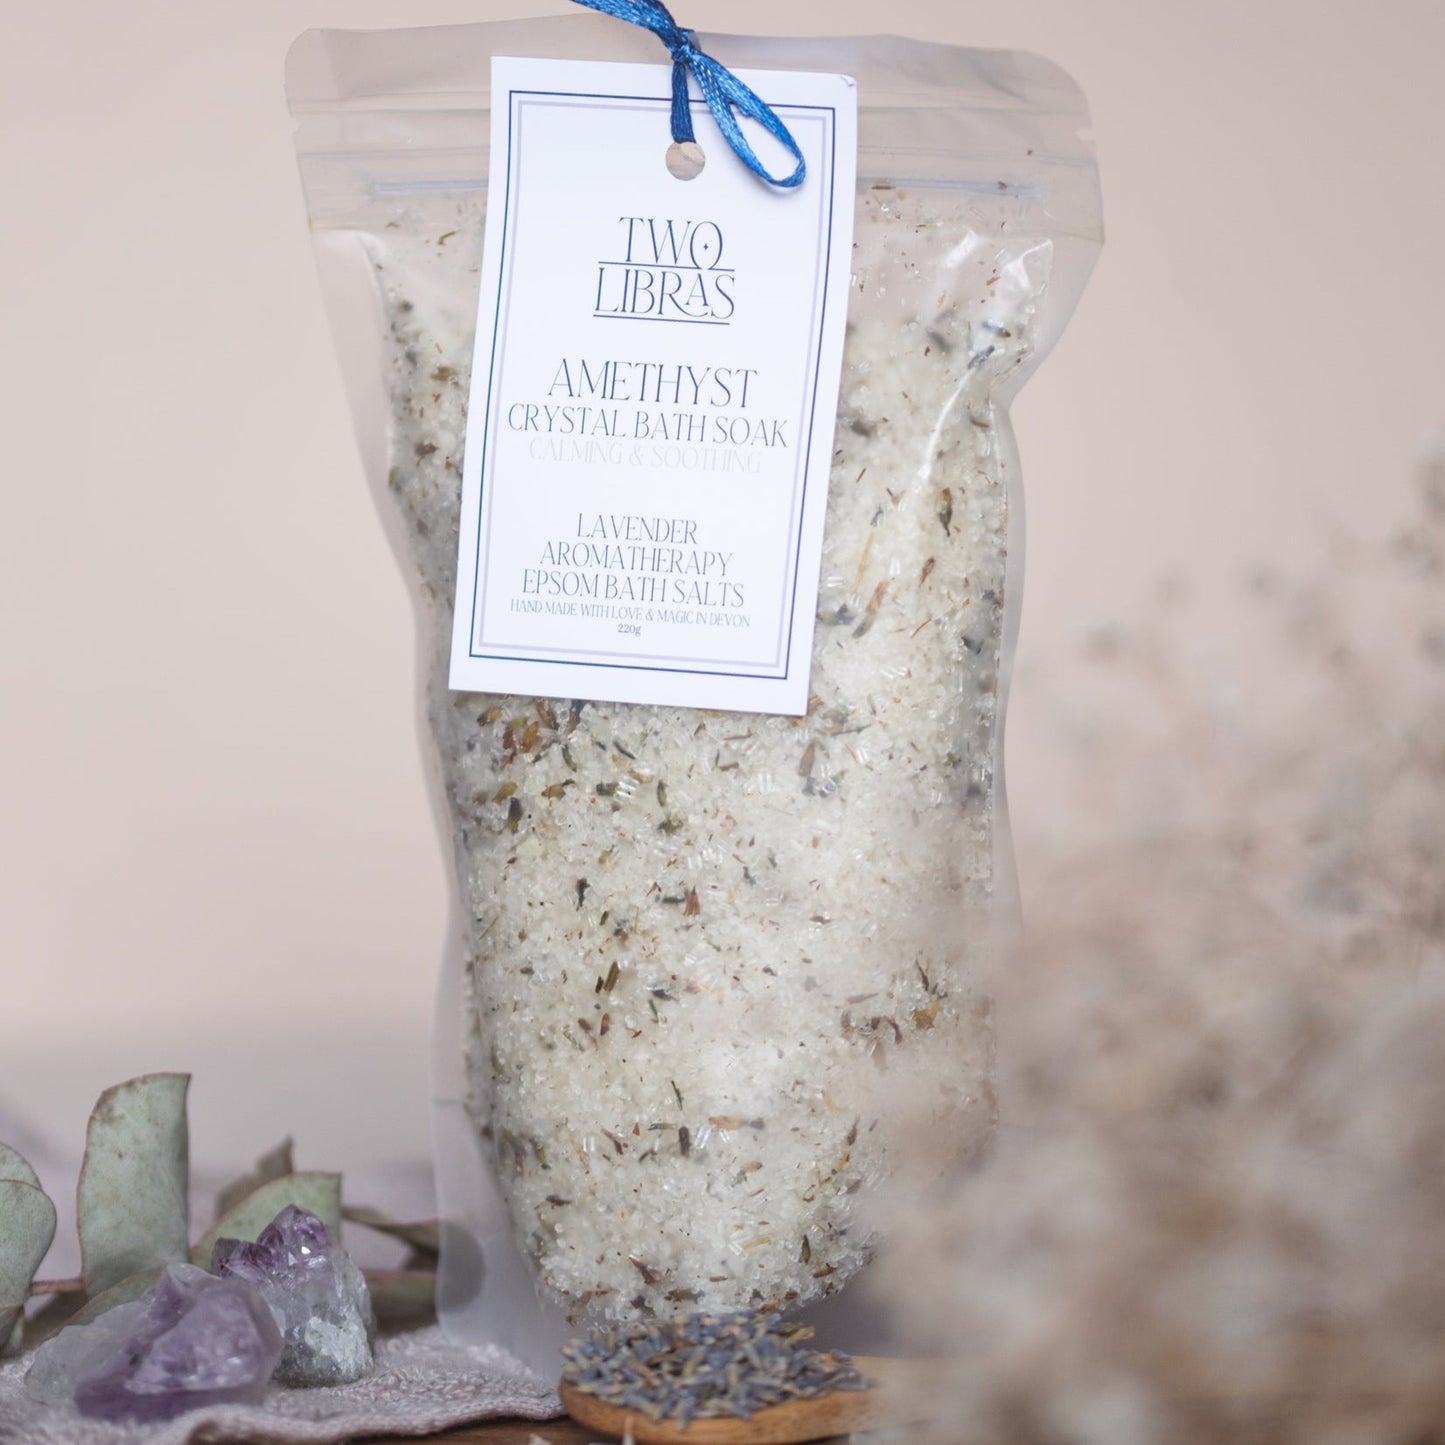 Amethyst Lavender Crystal Bath Soak - Epsom Bath Salts for Relaxation and Healing